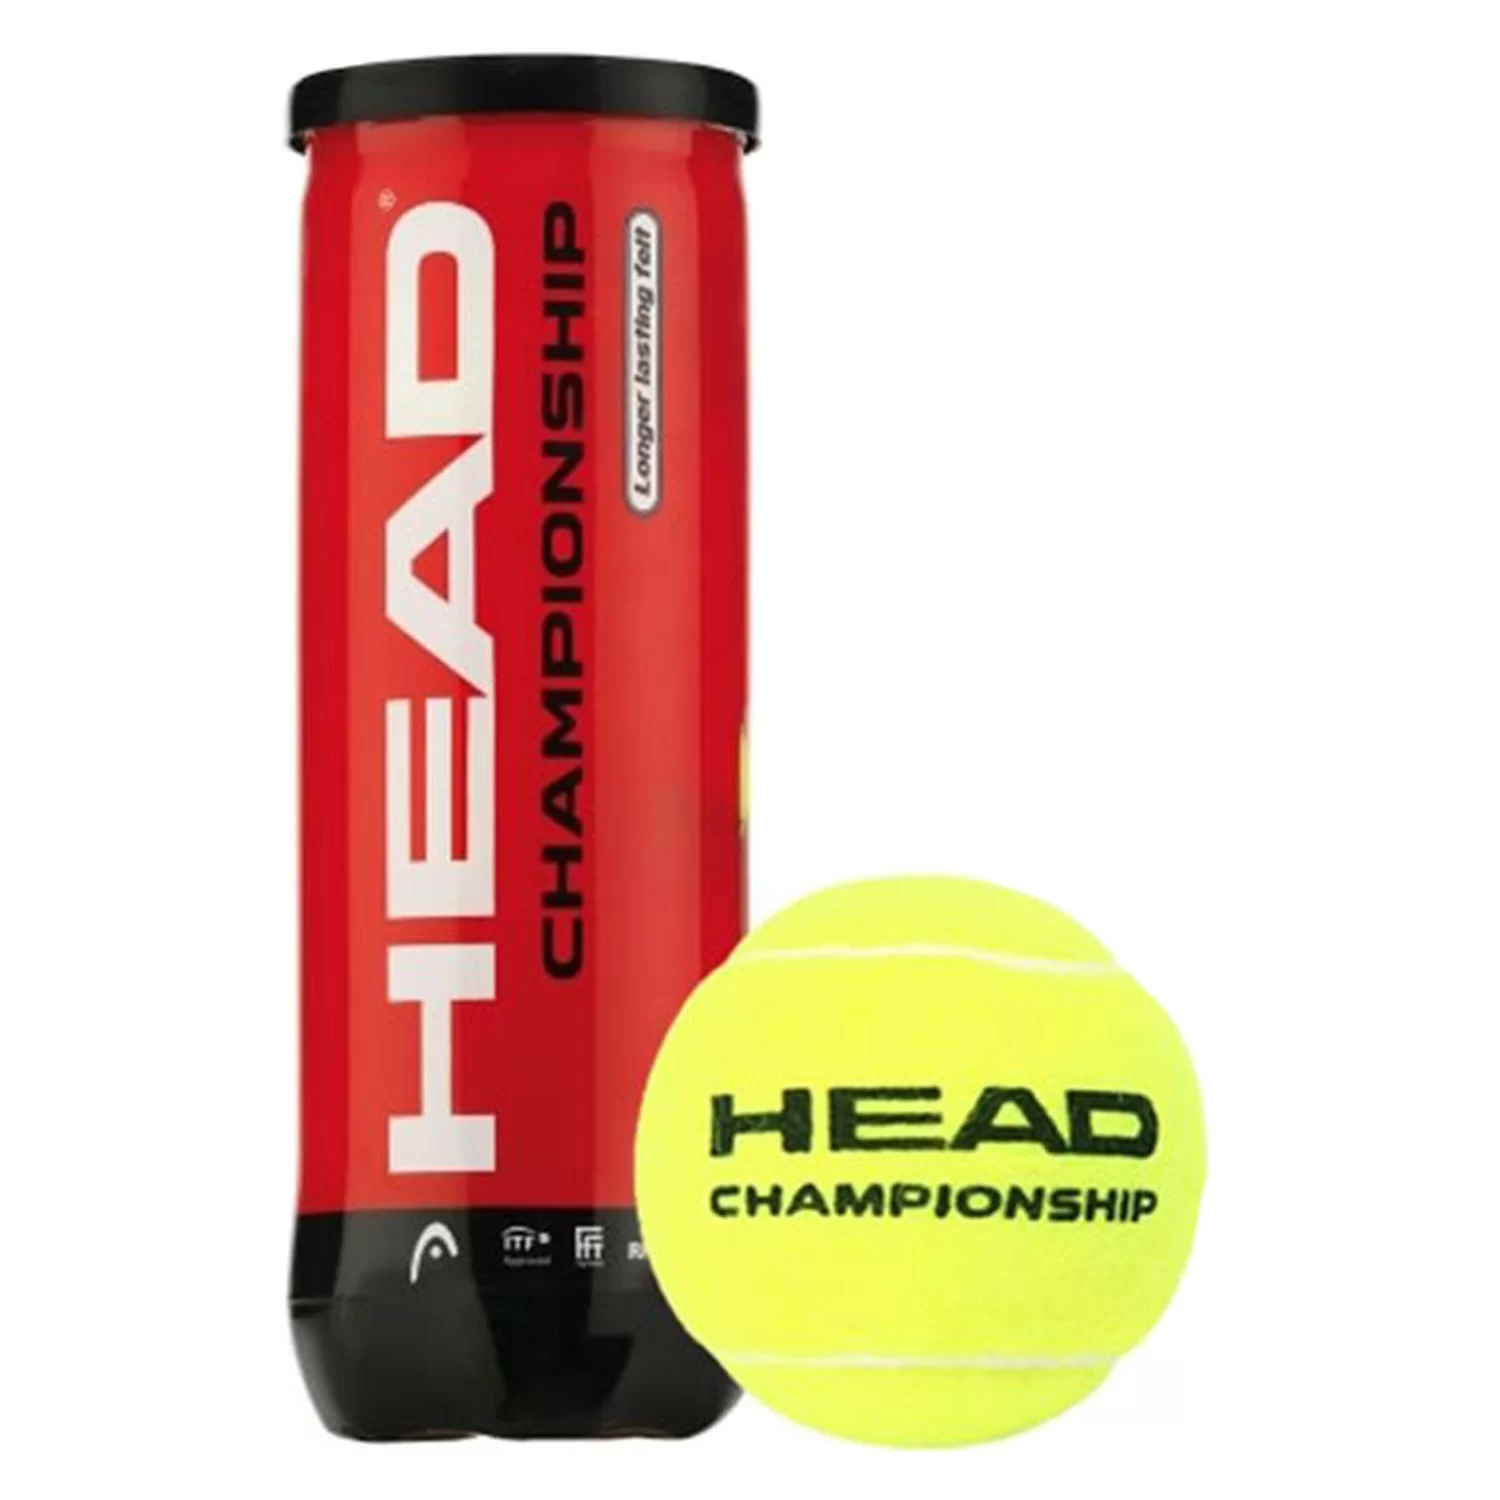 Фото Мяч для тенниса Head Championship 6dz 575203 / 575301 со склада магазина СпортСЕ